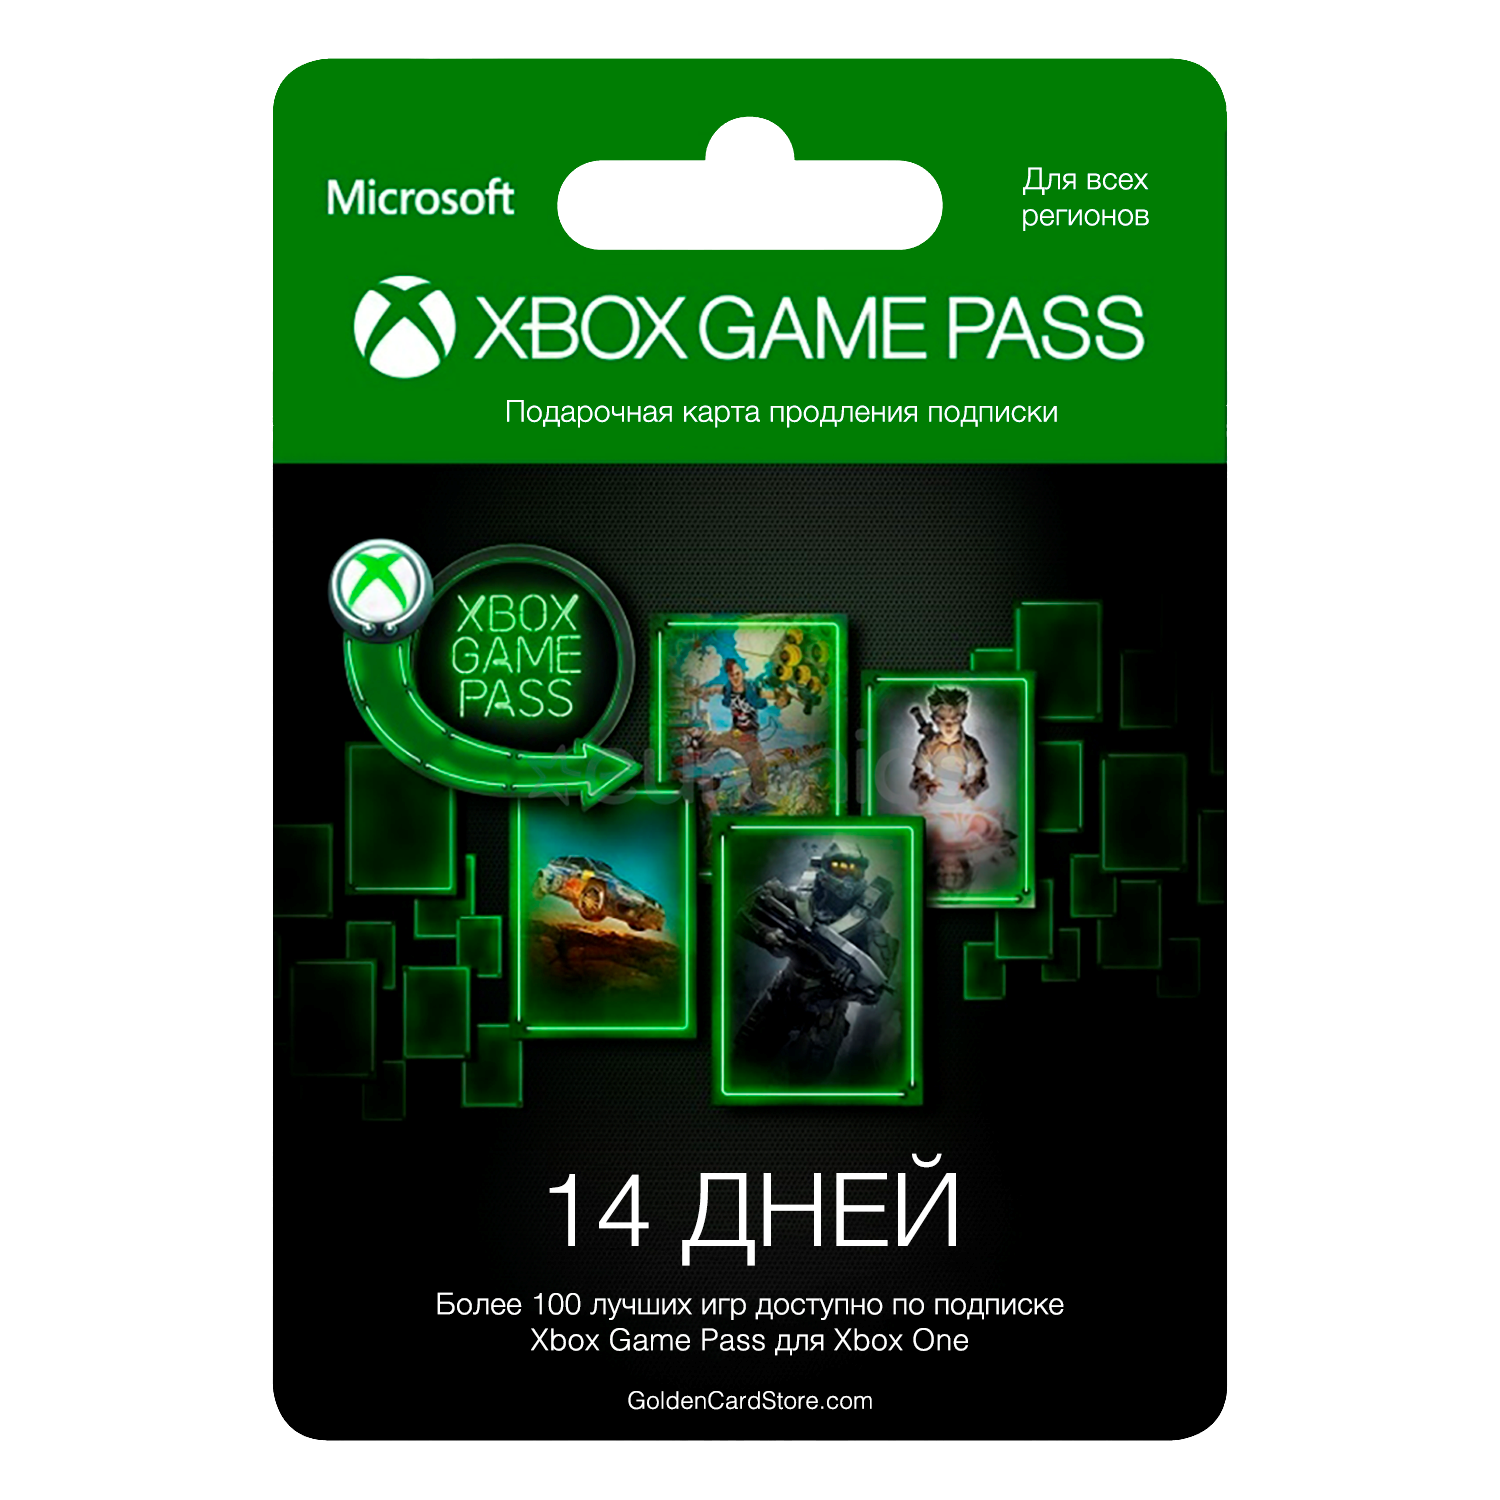 Подписка Xbox game Pass. Карта для Xbox game Pass. Microsoft Xbox подписка. Карточка гейм пасс. Подписка пасс хбокс